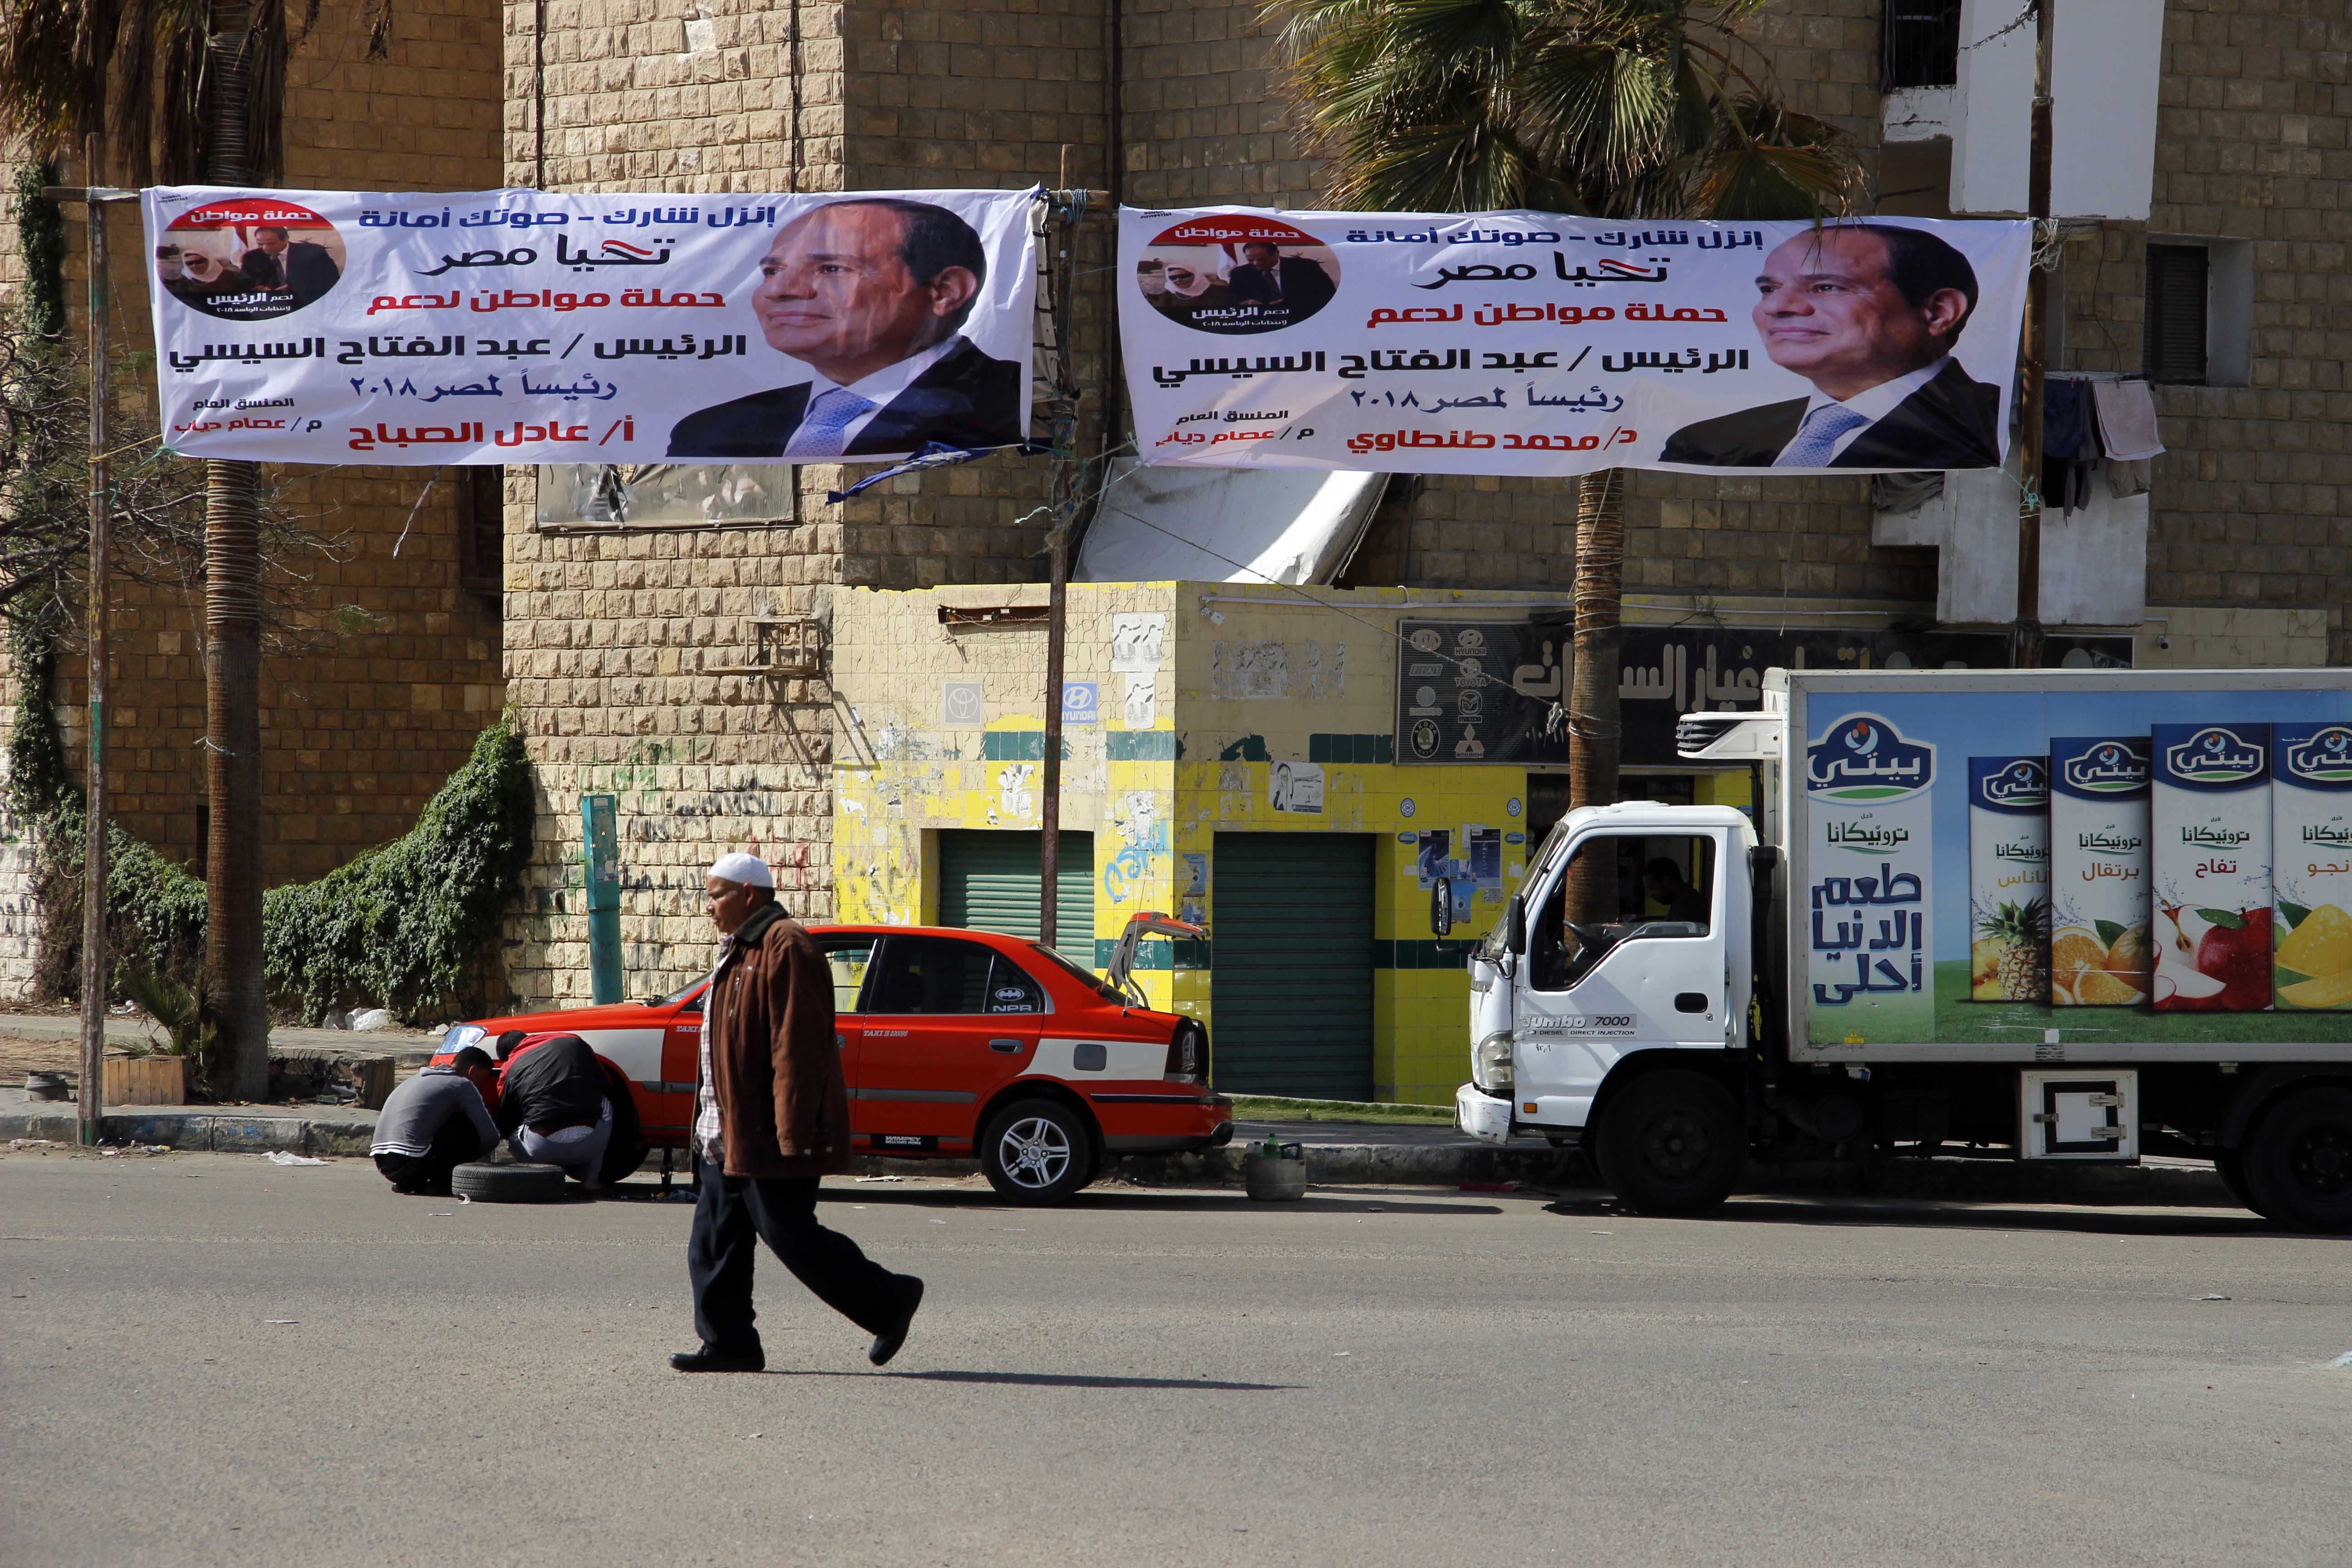 لافتات دعم السيسي تنتشر فس شوارع الإسماعيلية - تصوير  محمد عوض  (8)